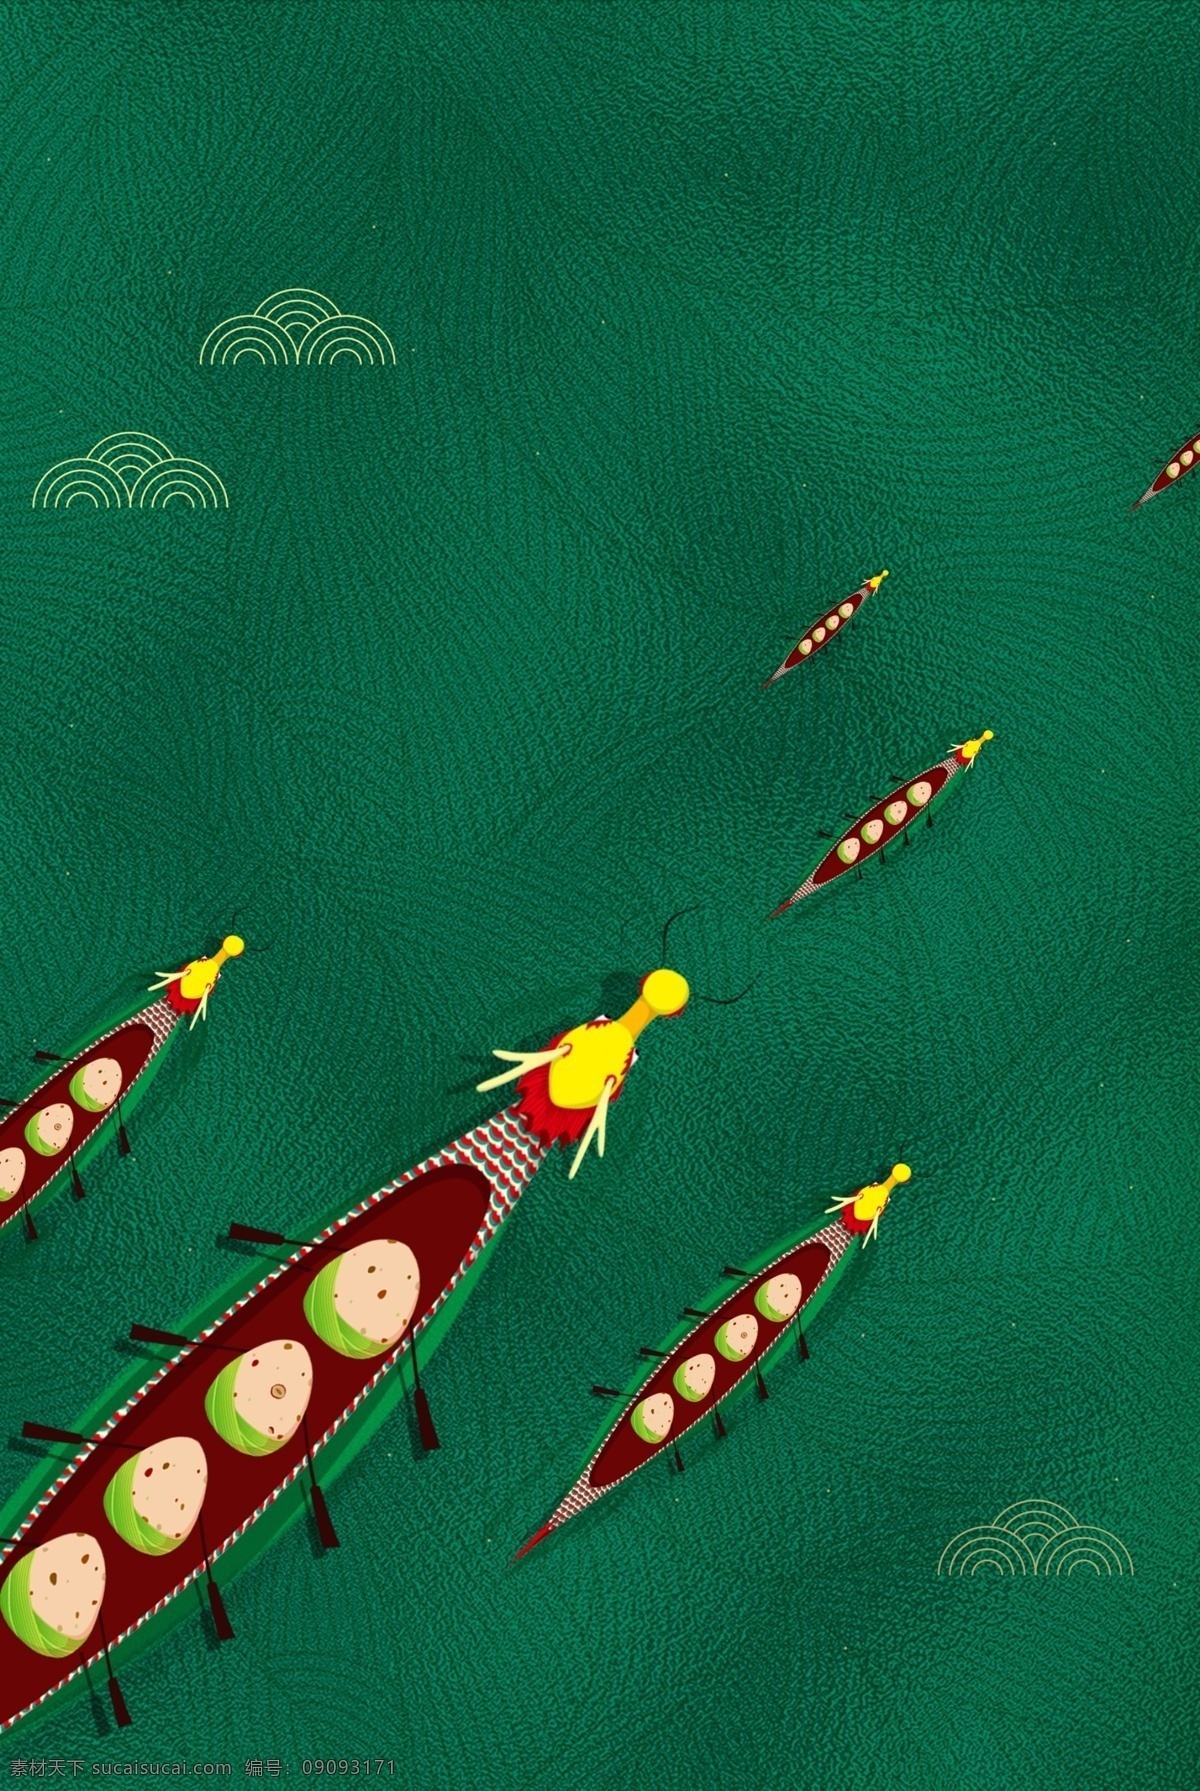 端午龙舟粽子 端午龙舟 粽子背景 绿色 质感底纹 插画 卡通 祥云 树叶纹理 端午划船